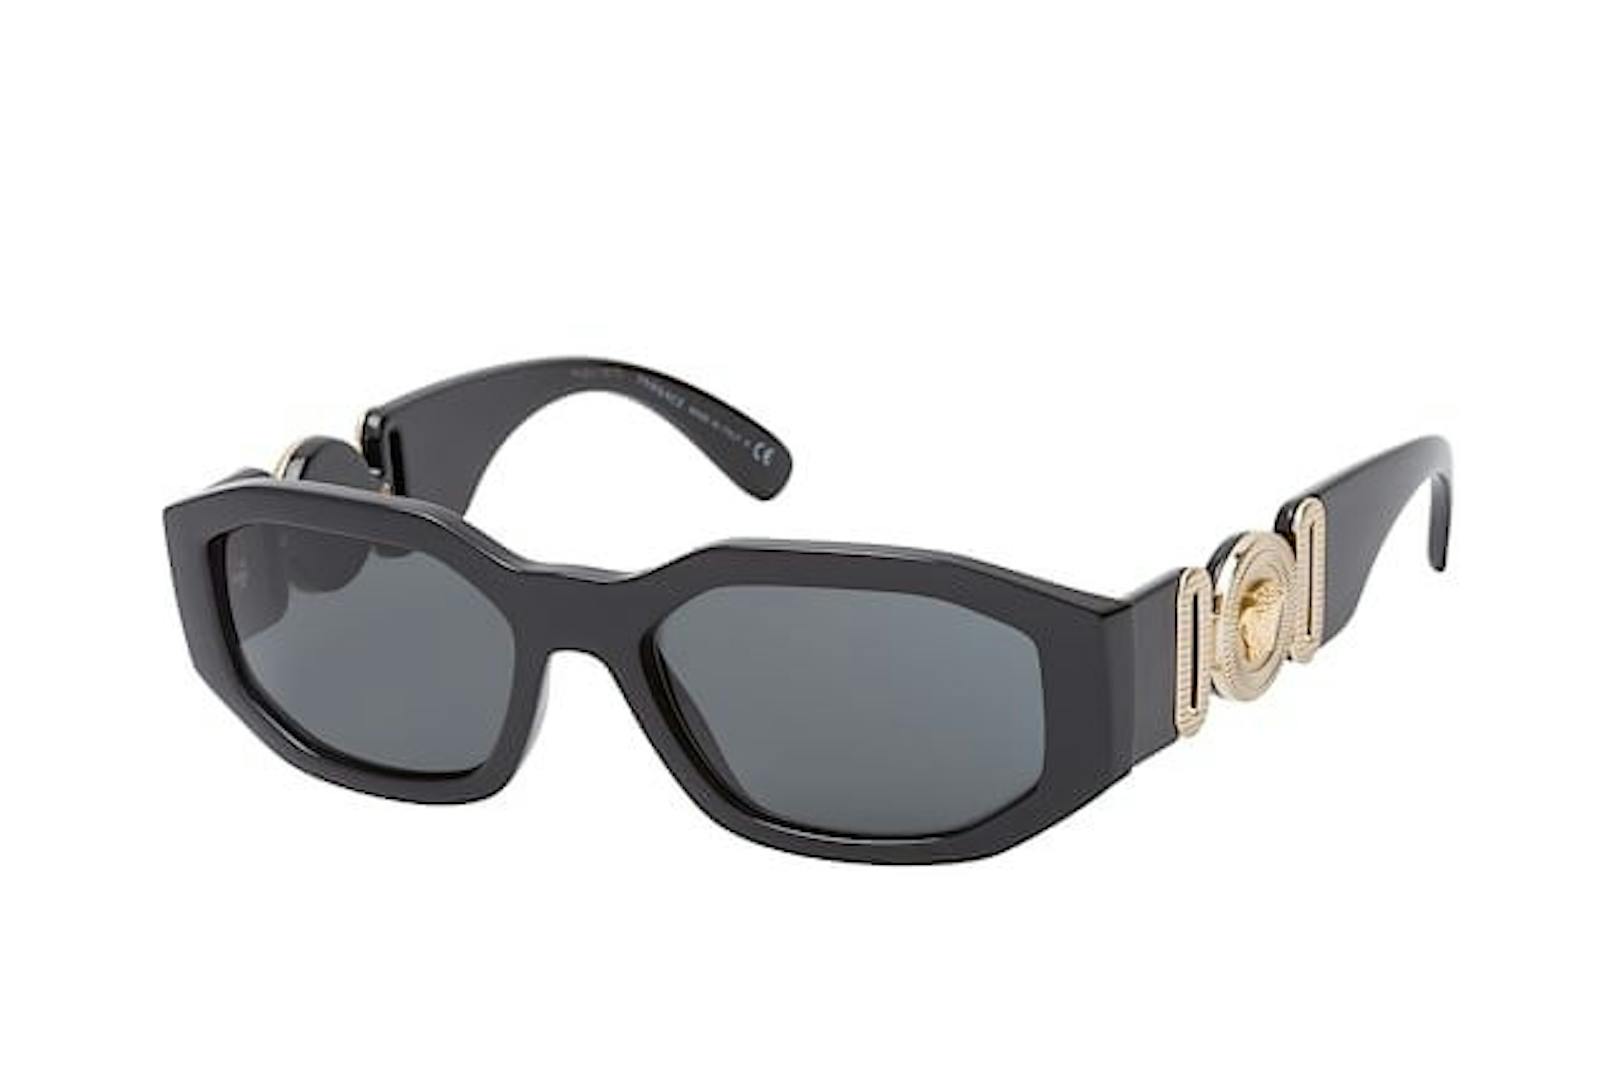 Sonnenbrillen werden jetzt auch wieder schmal. Modell von Versace, gesehen bei Mr. Spex